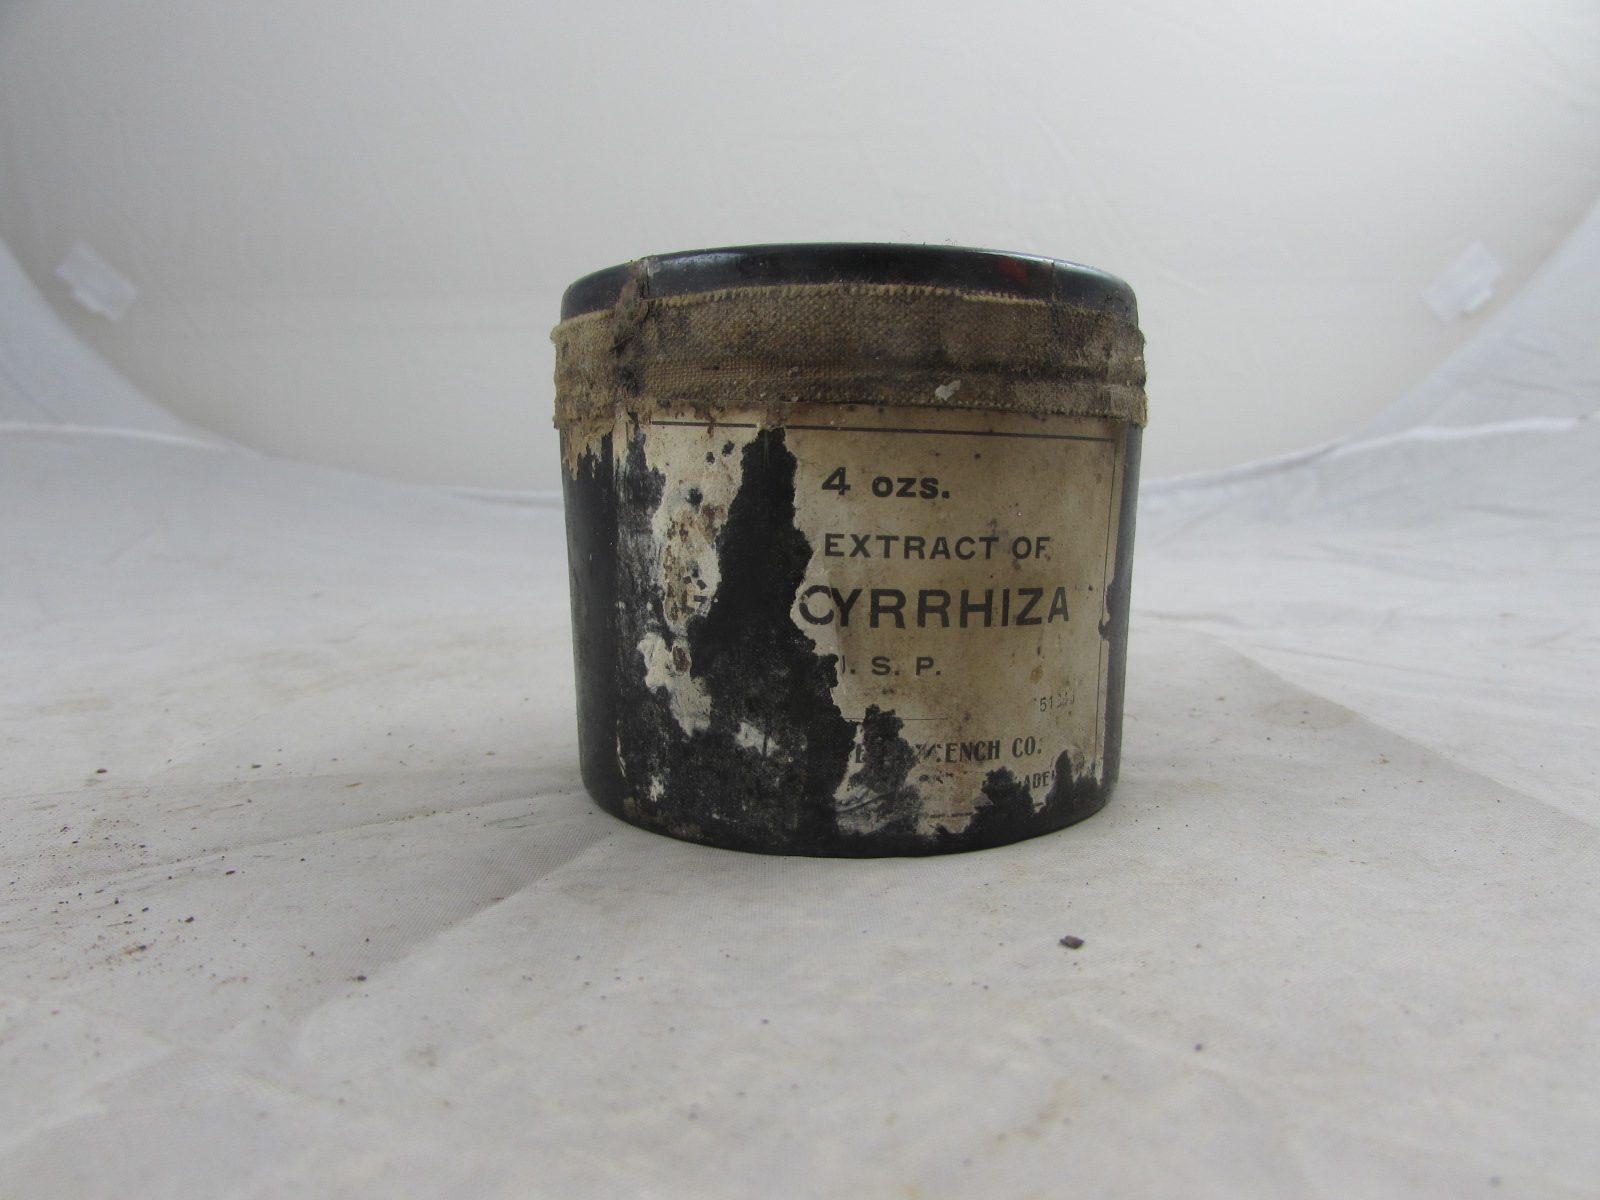 WW1 Jar of Extract of Glycyrrhiza